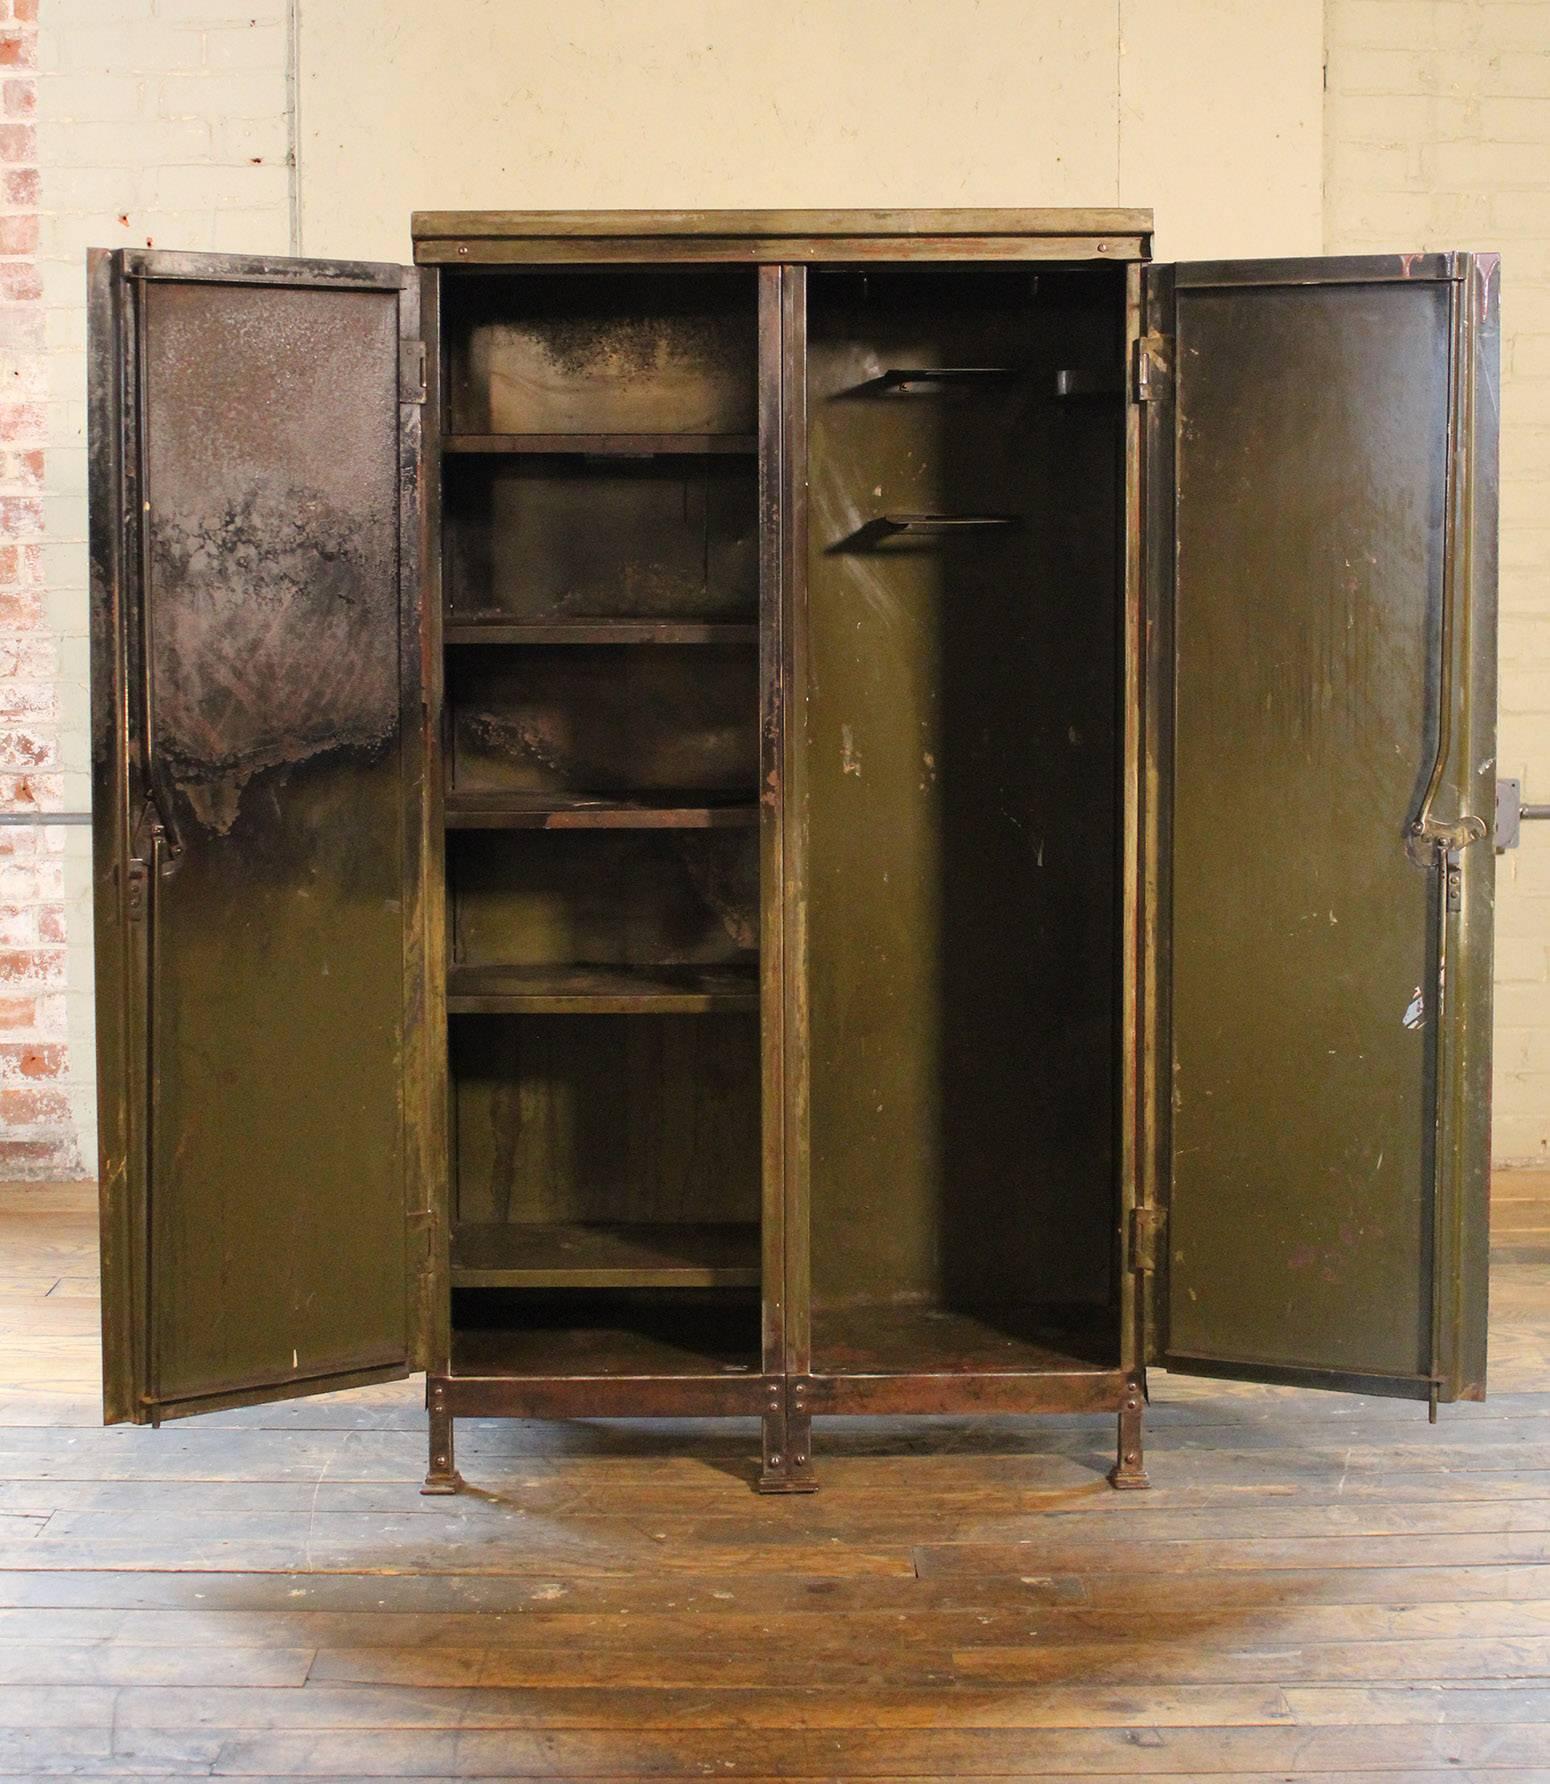 American Vintage Distressed Painted Metal Storage Cabinet Locker